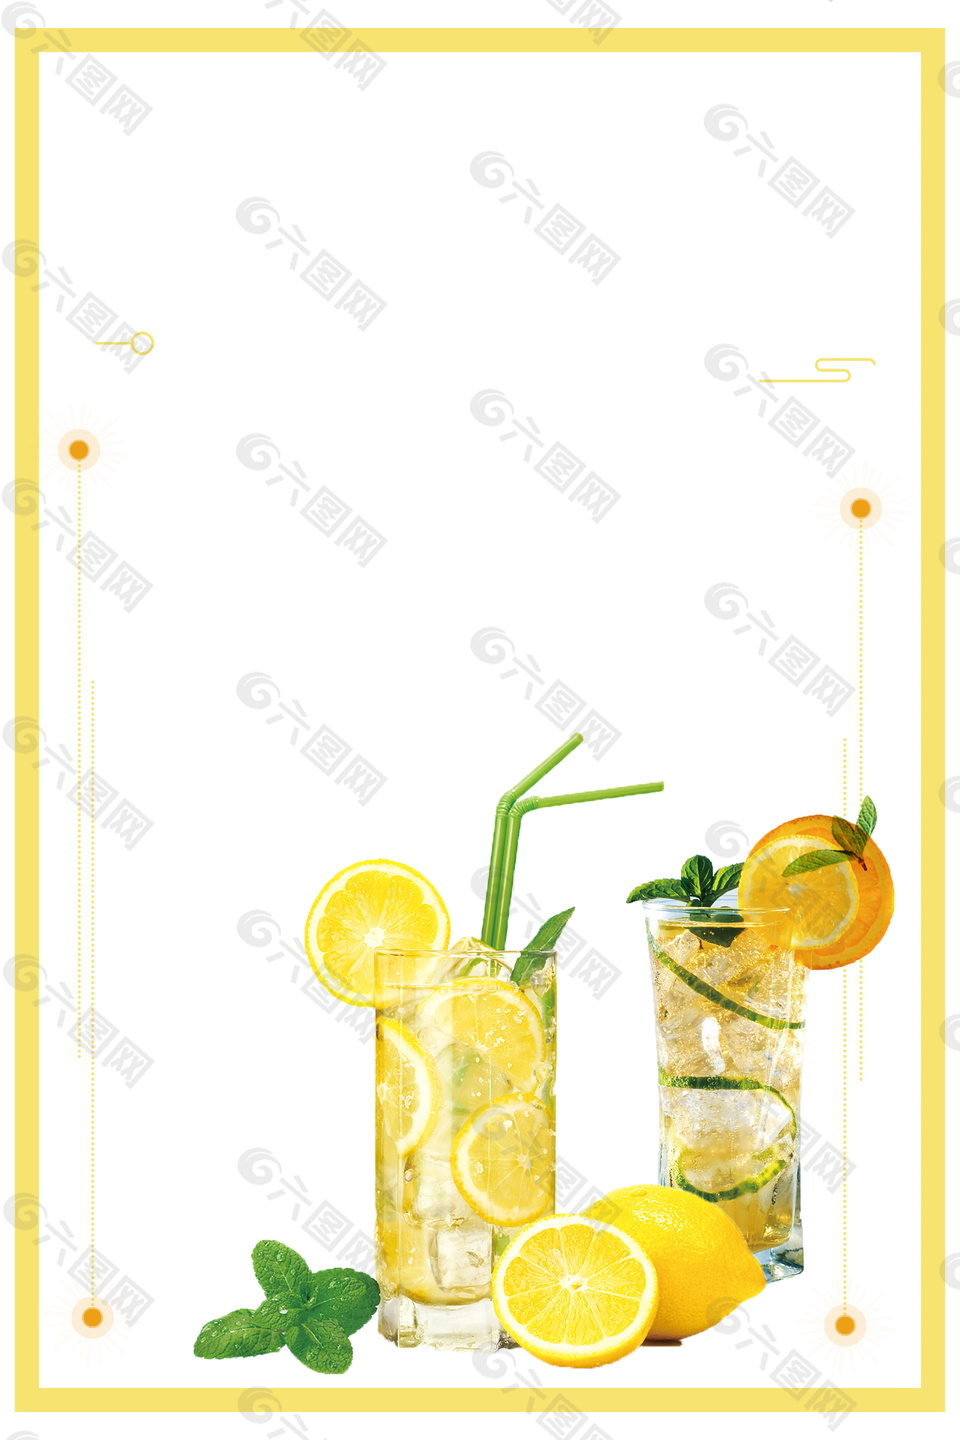 夏日冰爽柠檬茶边框背景素材